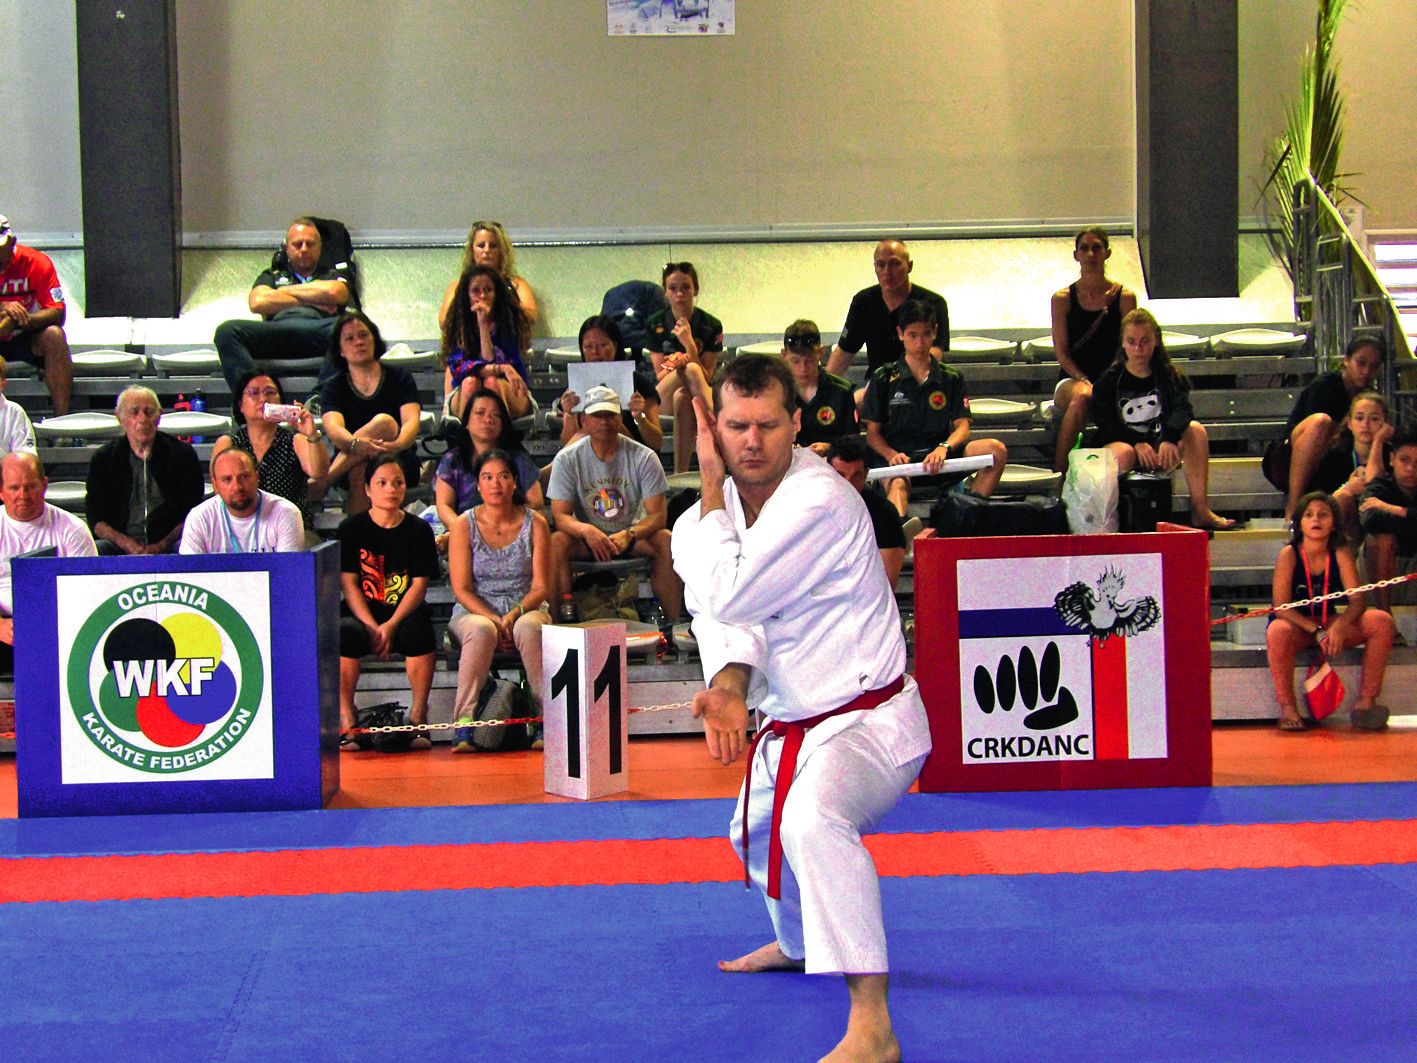 James Denenny, un combattant australien mal-voyant, qui a participé aux championnats du monde handisport à Madrid, a effectué une démonstration de son savoir-faire en kata.